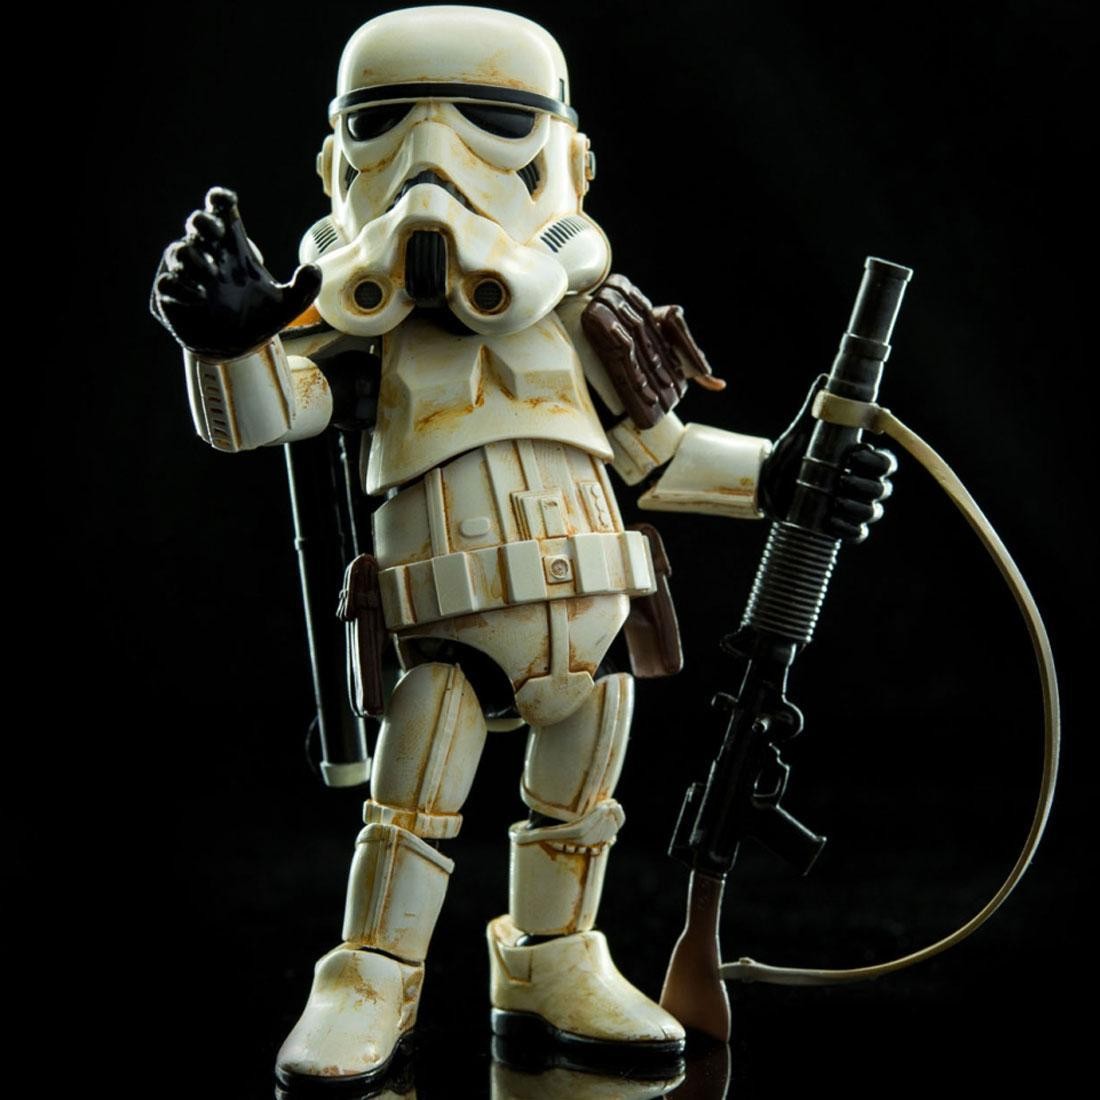 star wars sandtrooper